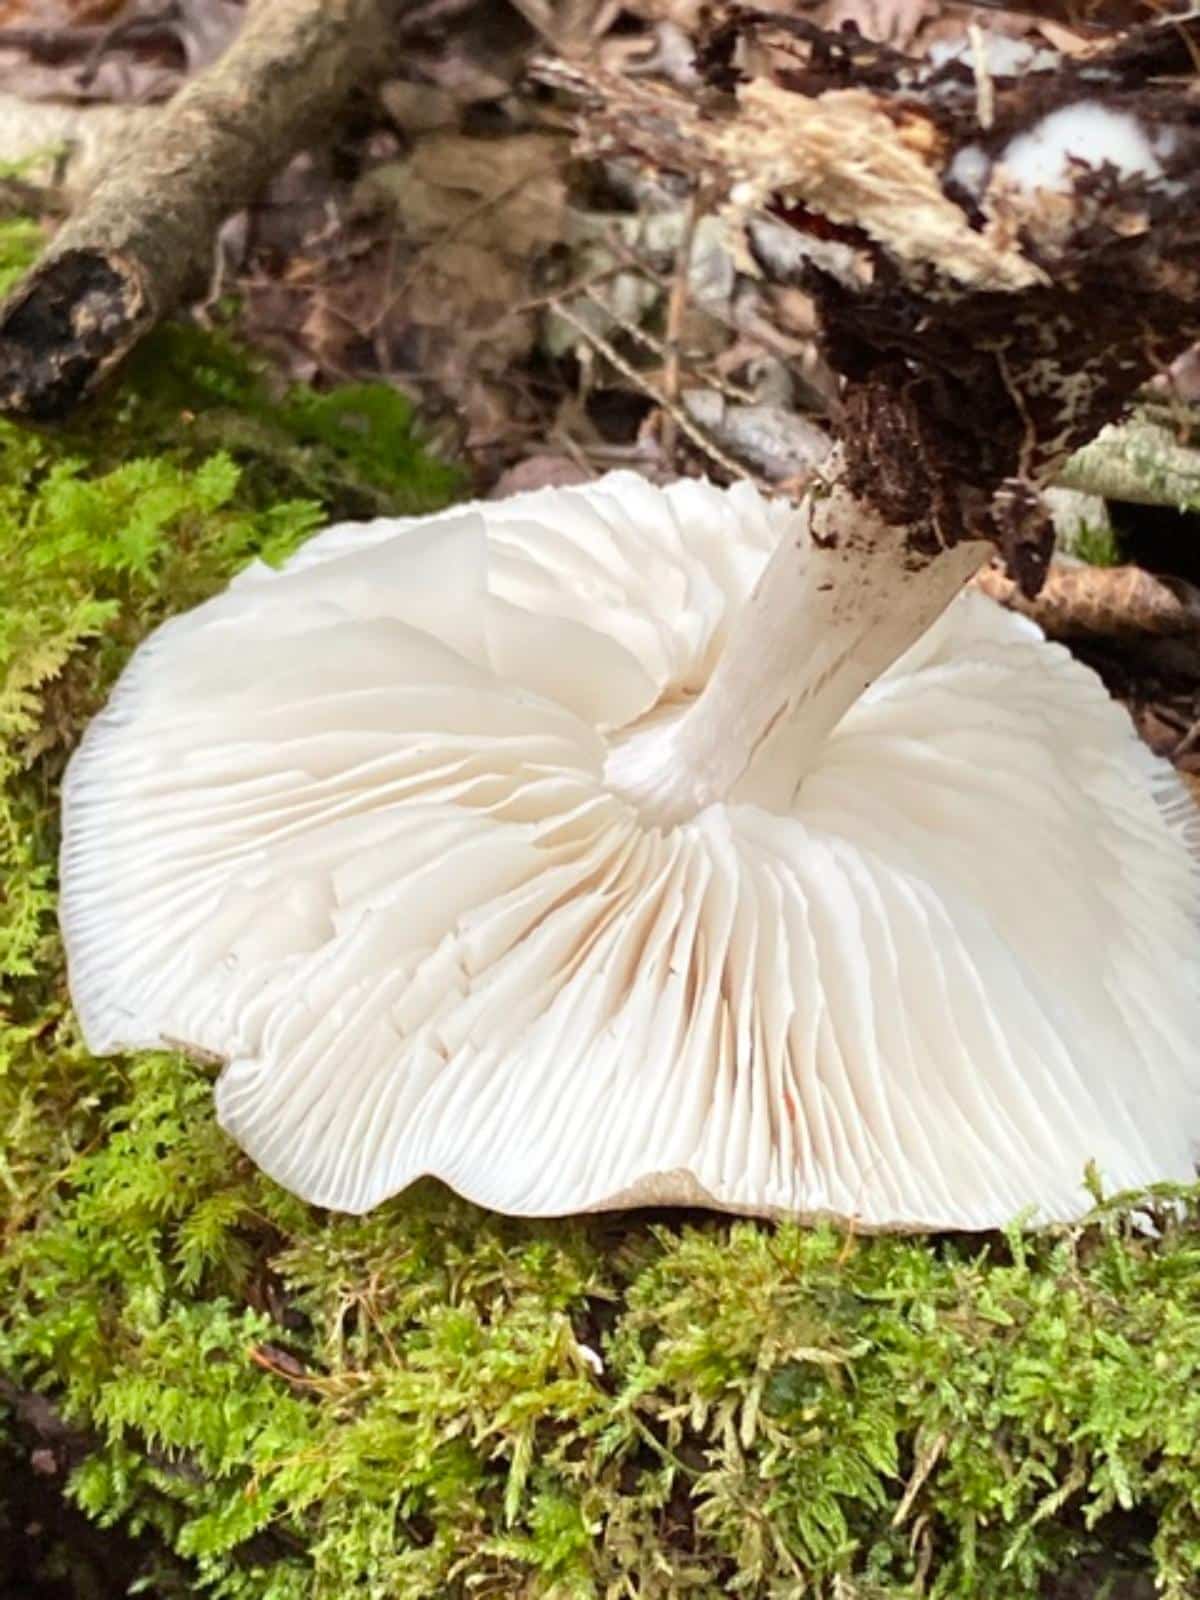 platterful mushroom gills
